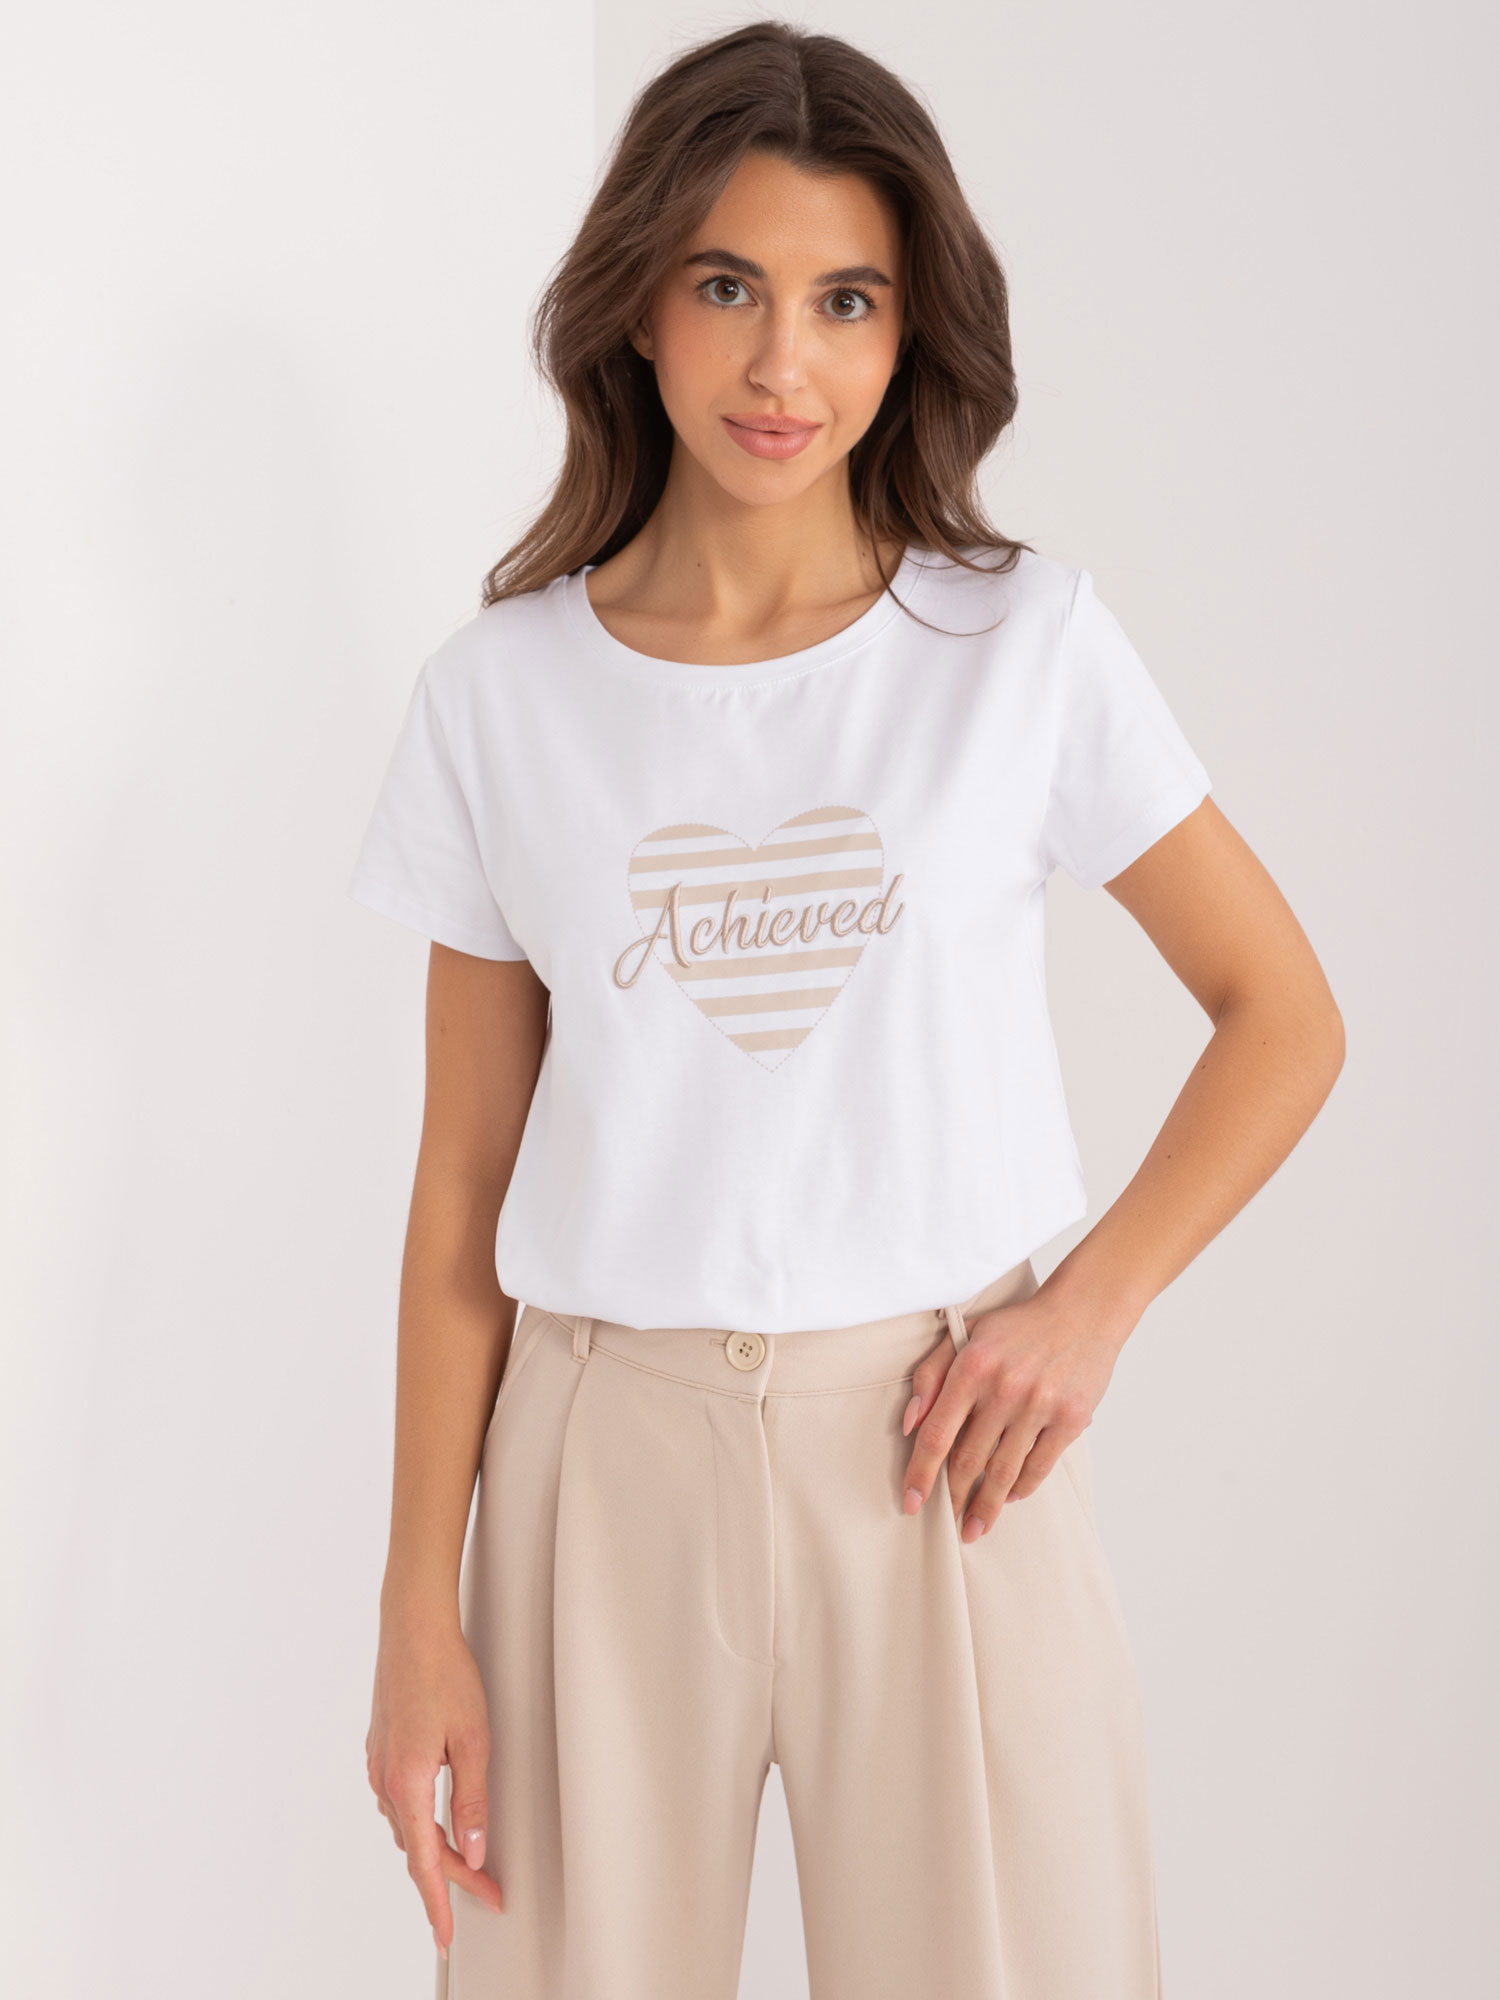 Bílo-béžové tričko s potiskem srdíčka RV-TS-9667.19-white-beige Velikost: S/M